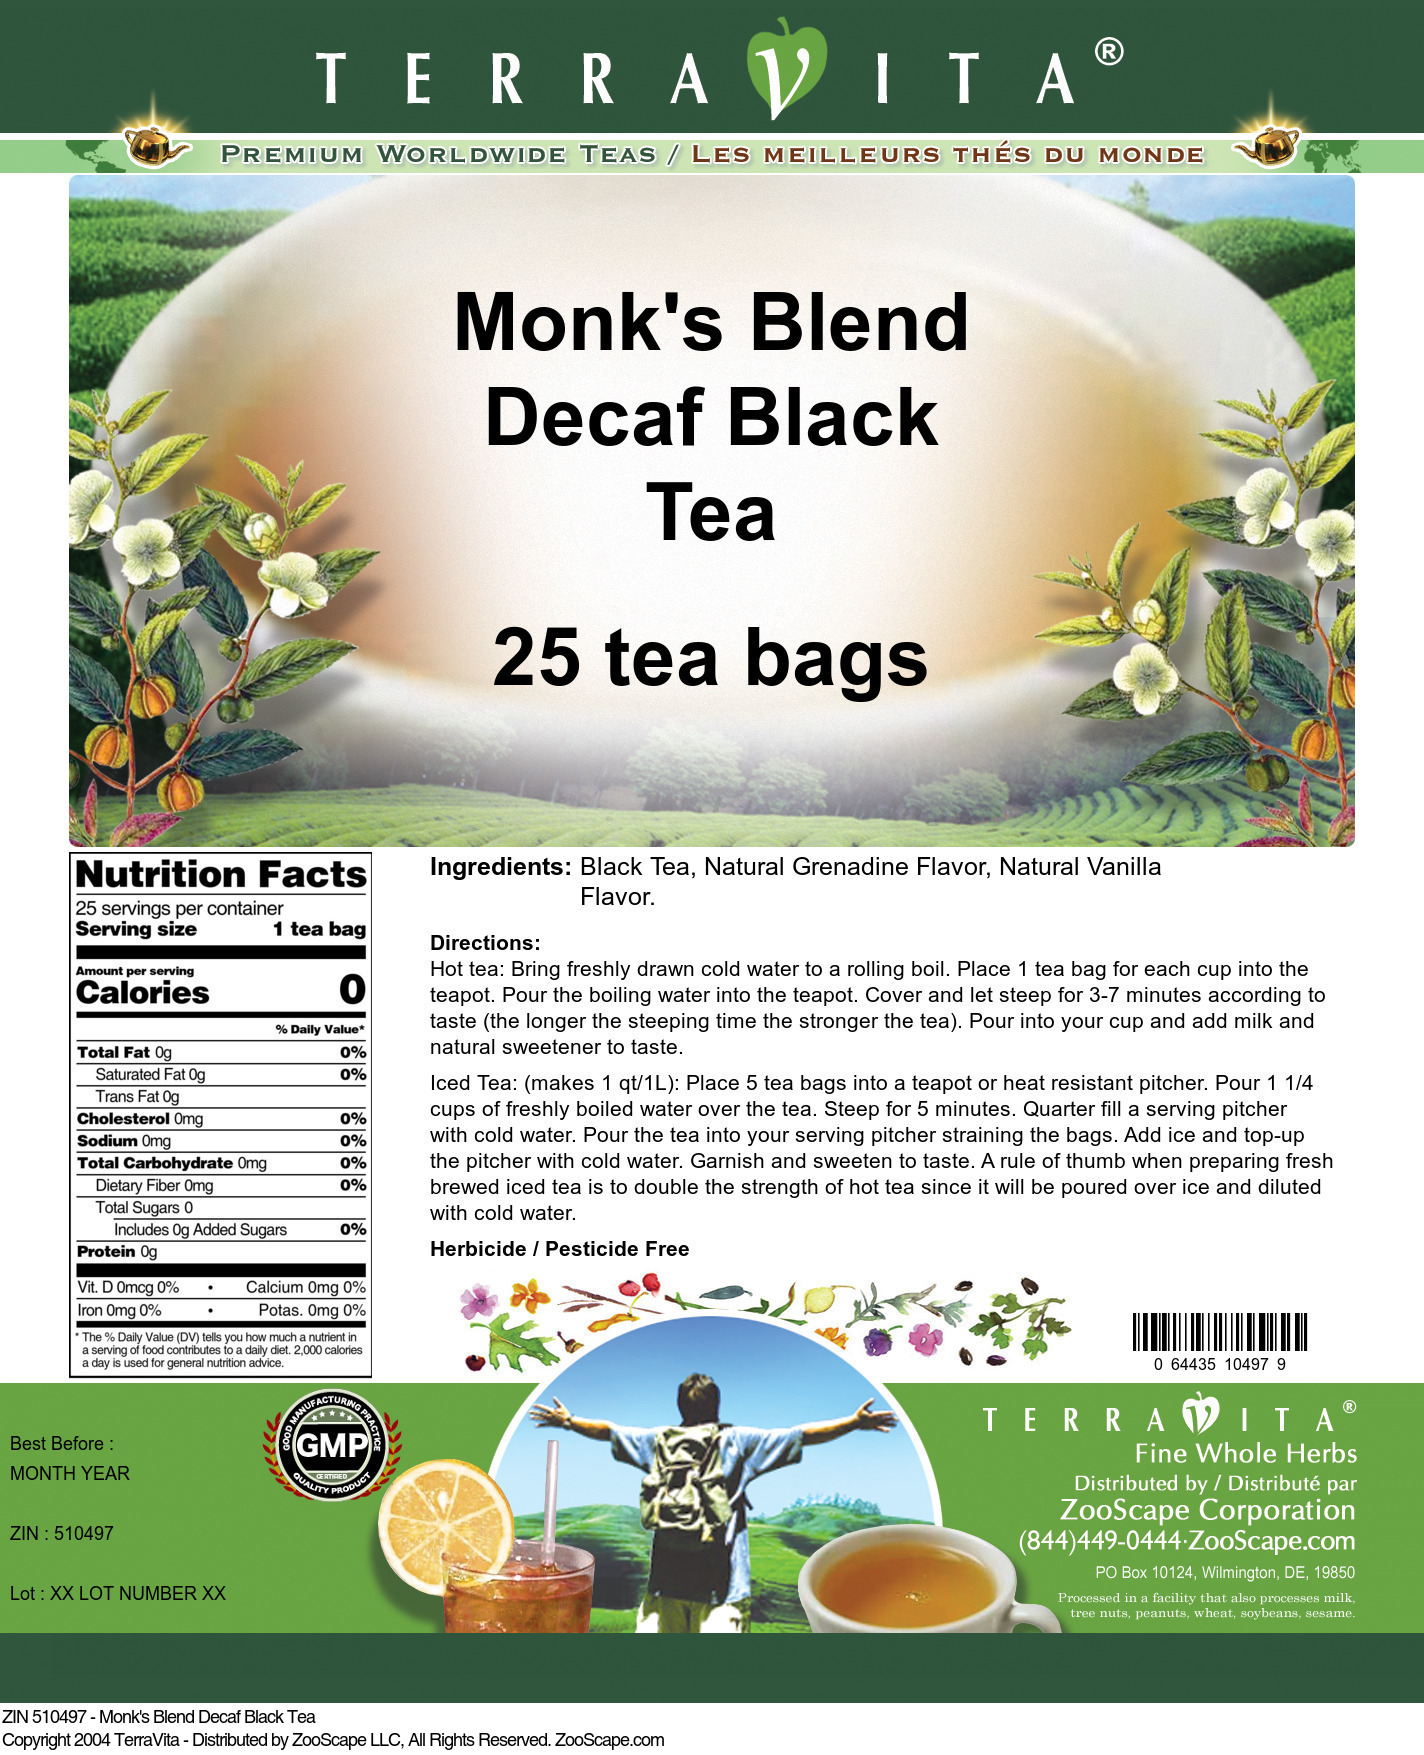 Monk's Blend Decaf Black Tea - Label